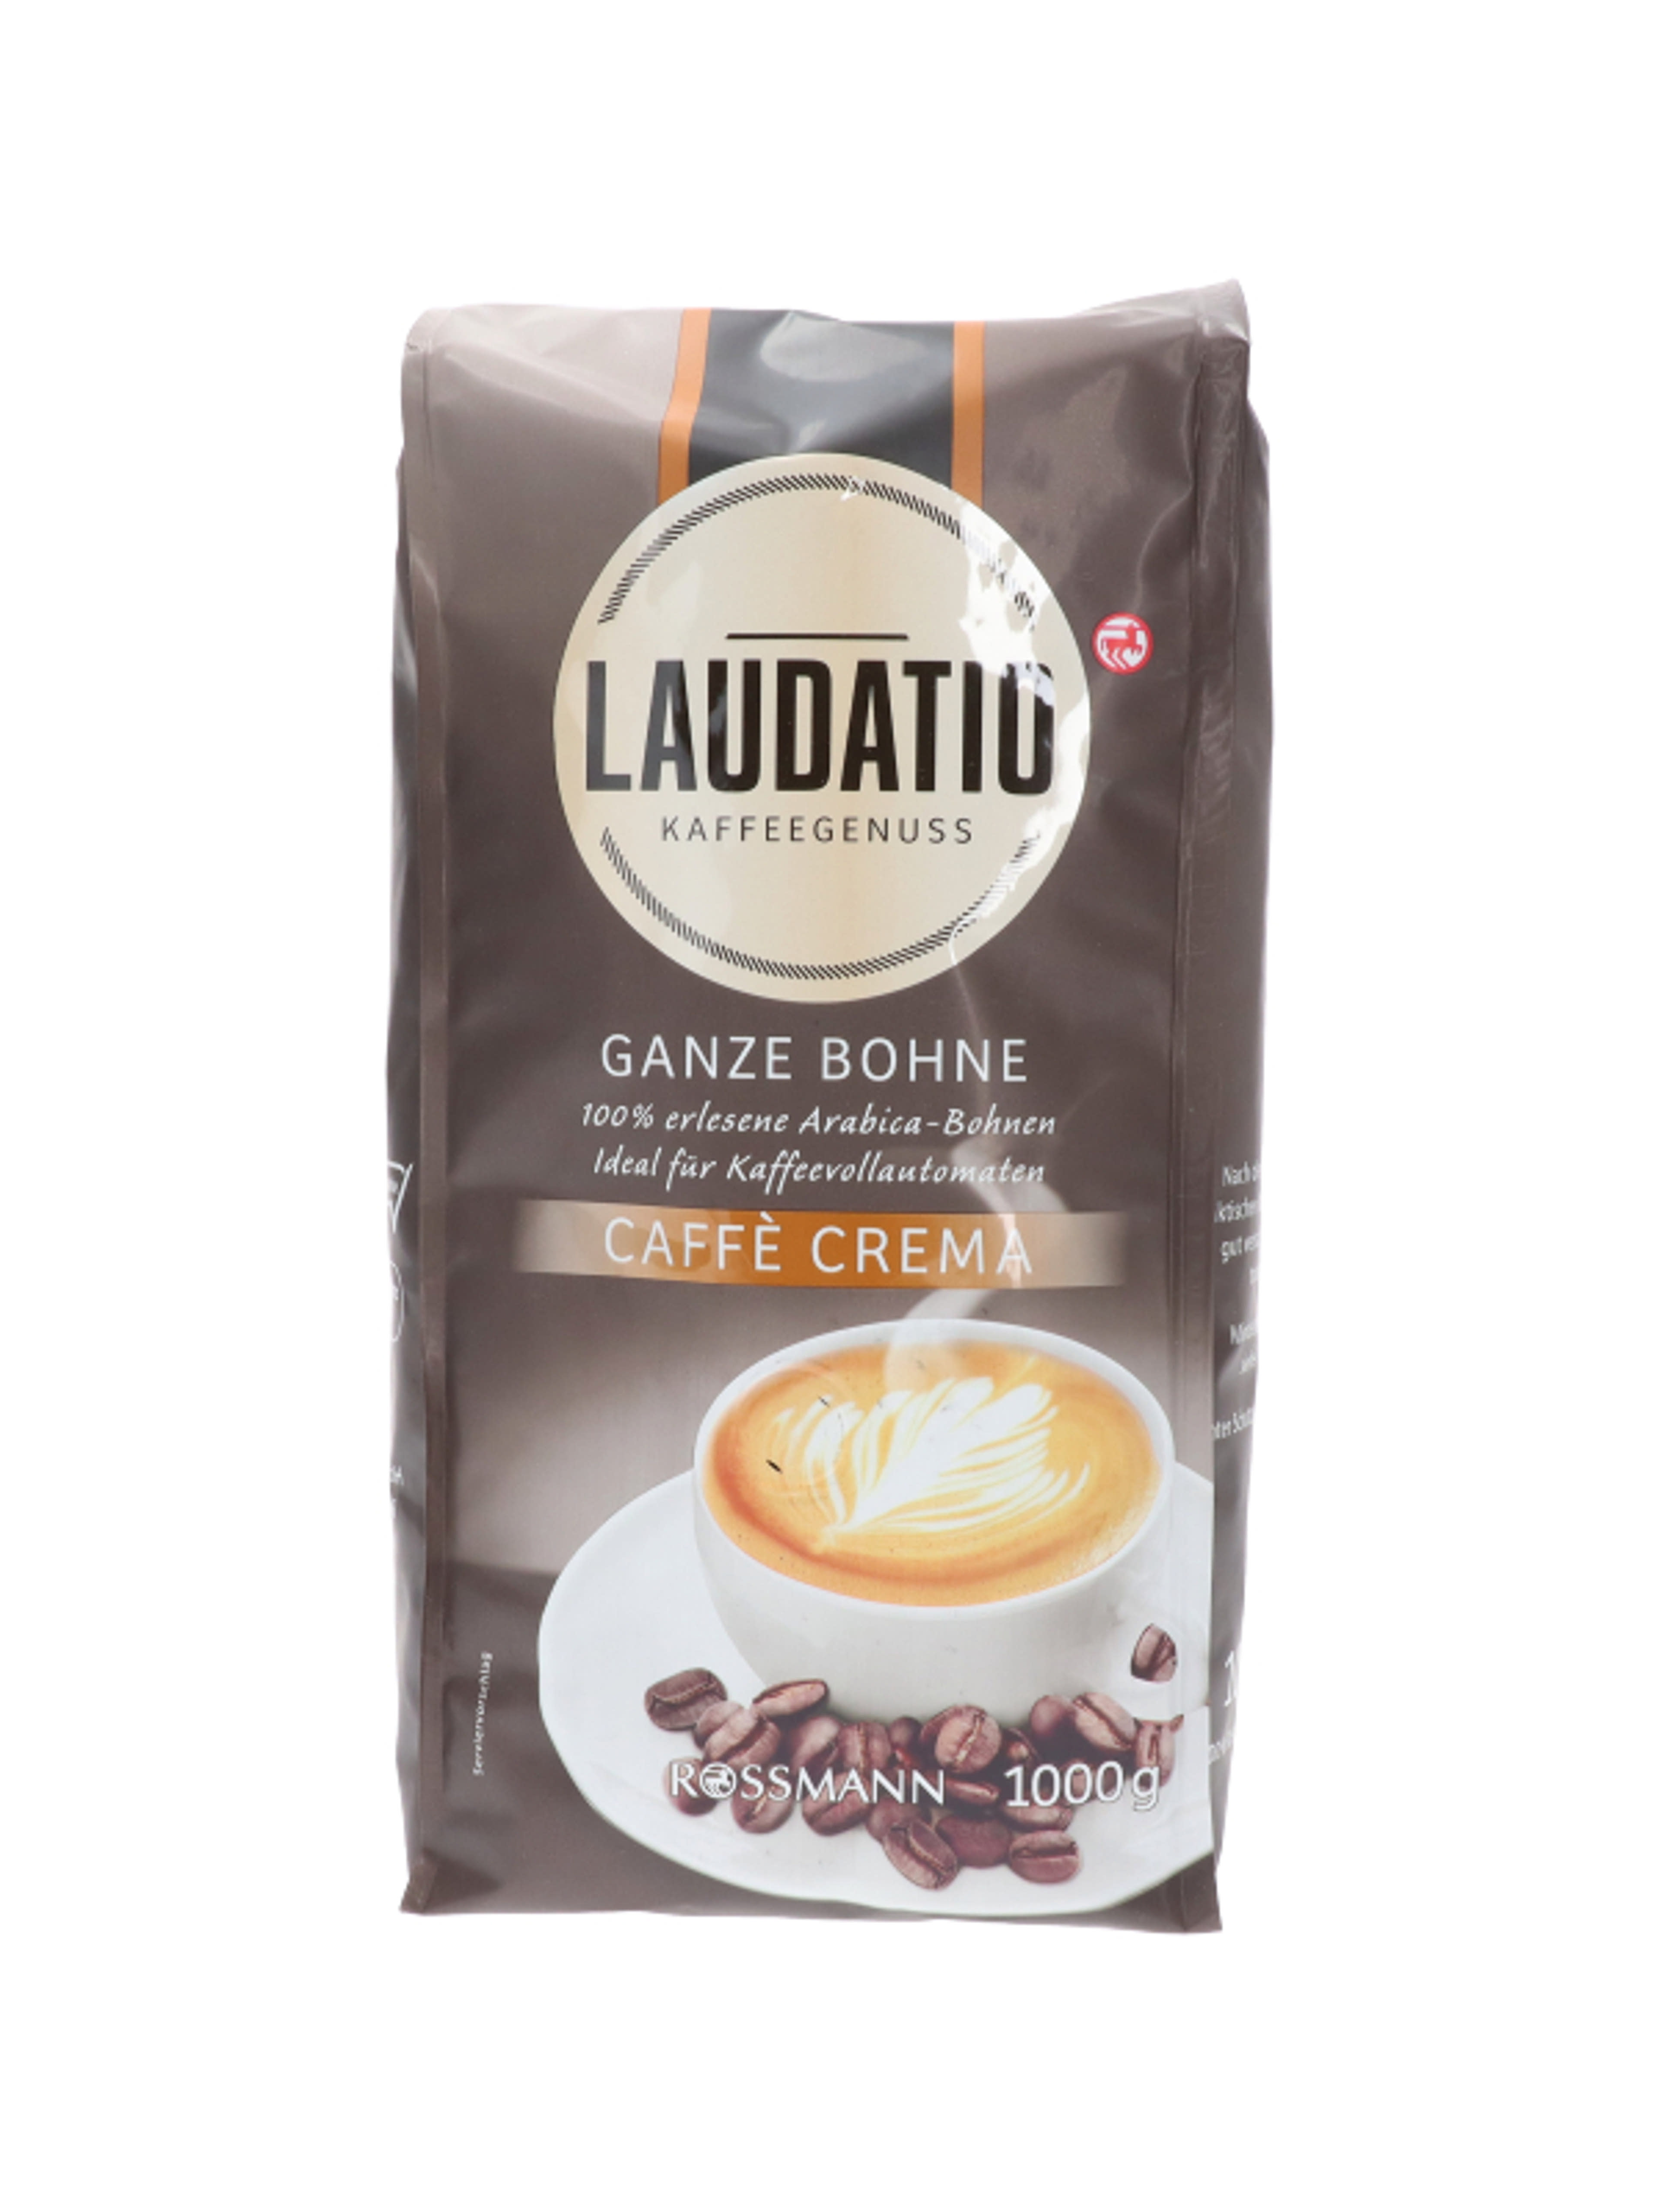 Laudatio szemes caffe crema - 1000 g